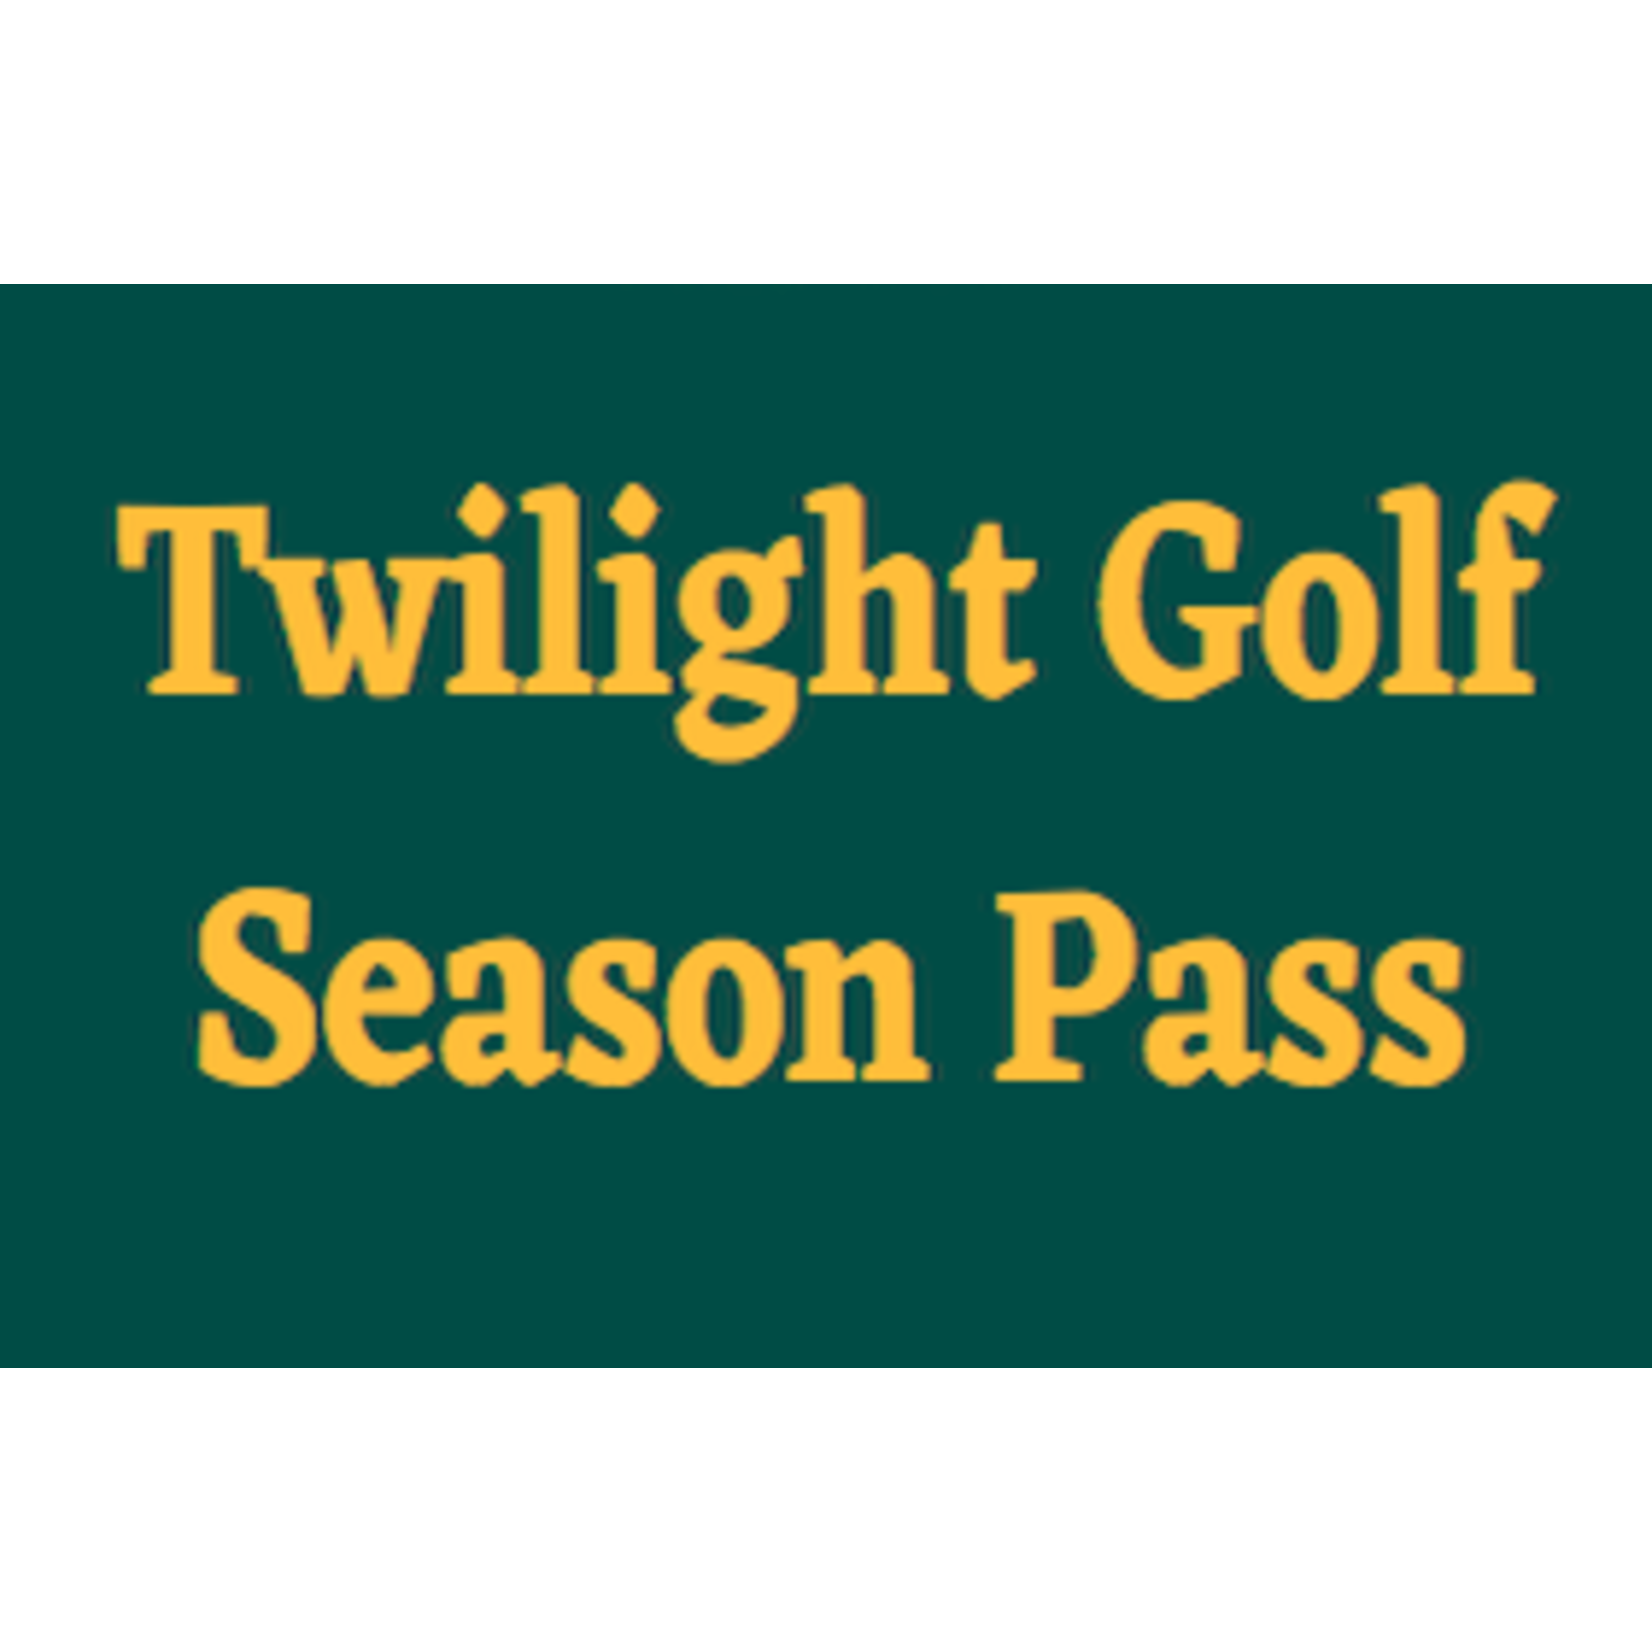 Twilight Season Pass - Twilight Passholder